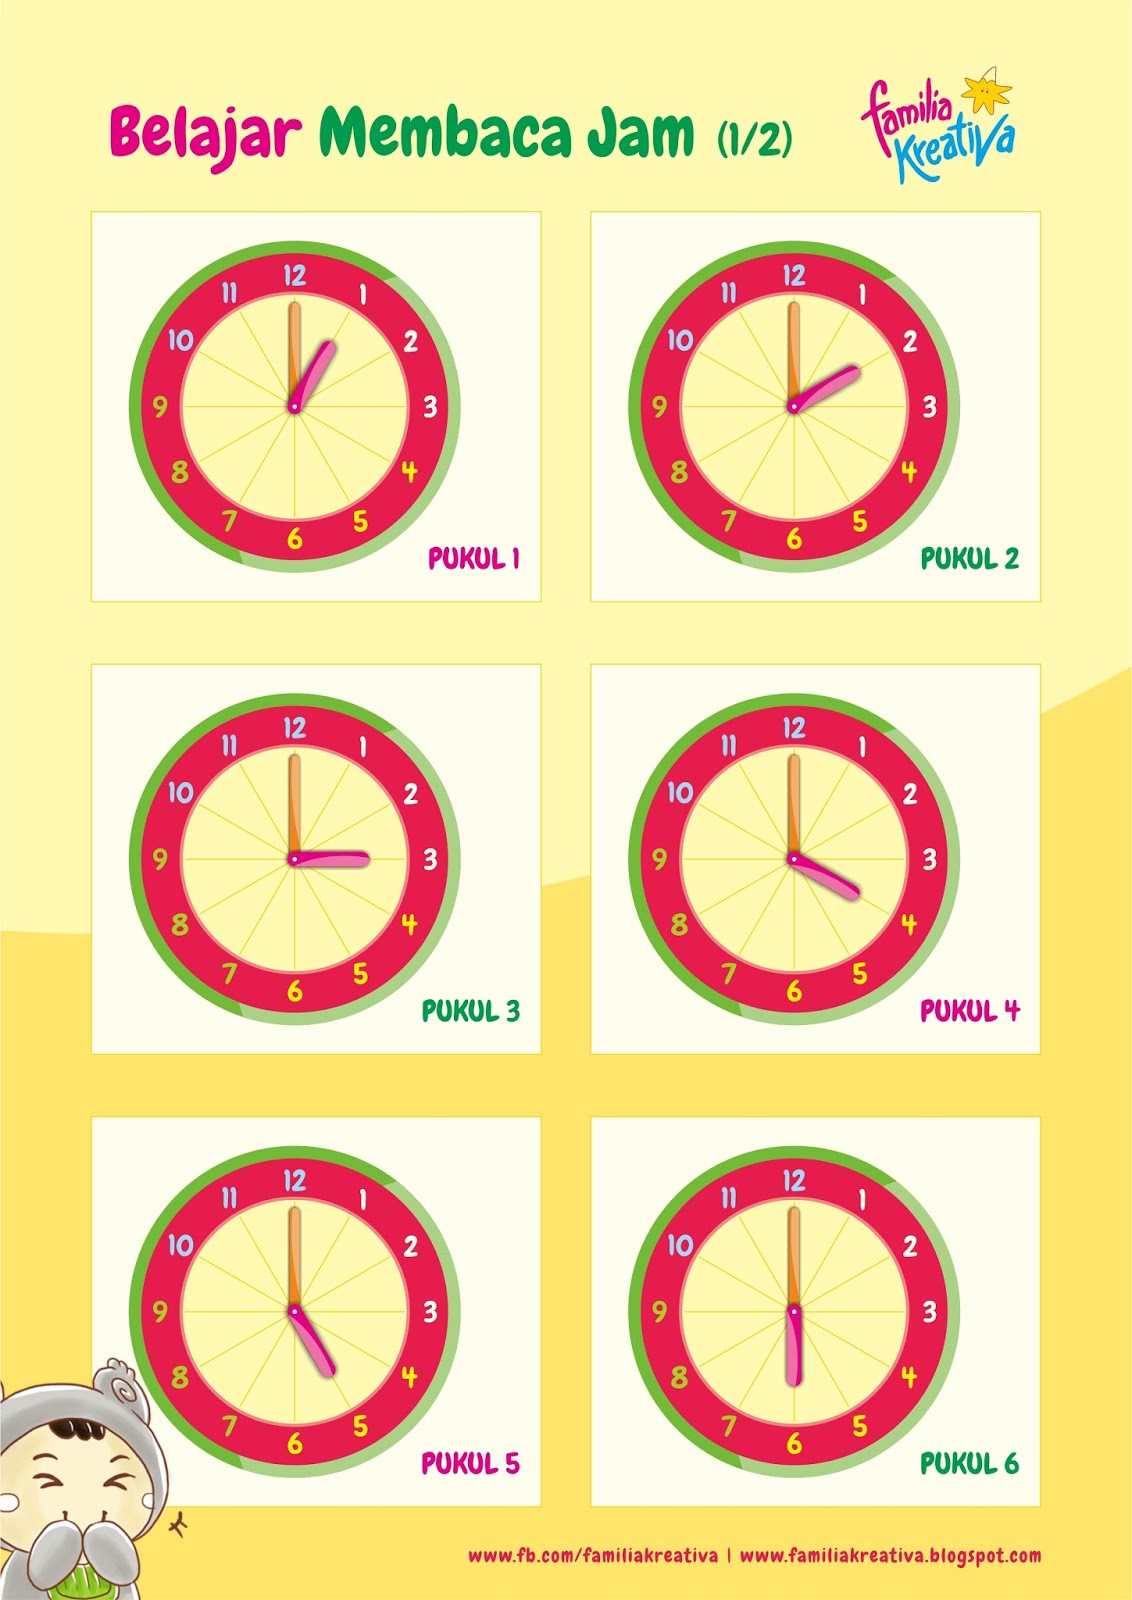 Download Gratis - Poster Belajar Mengenal Jam